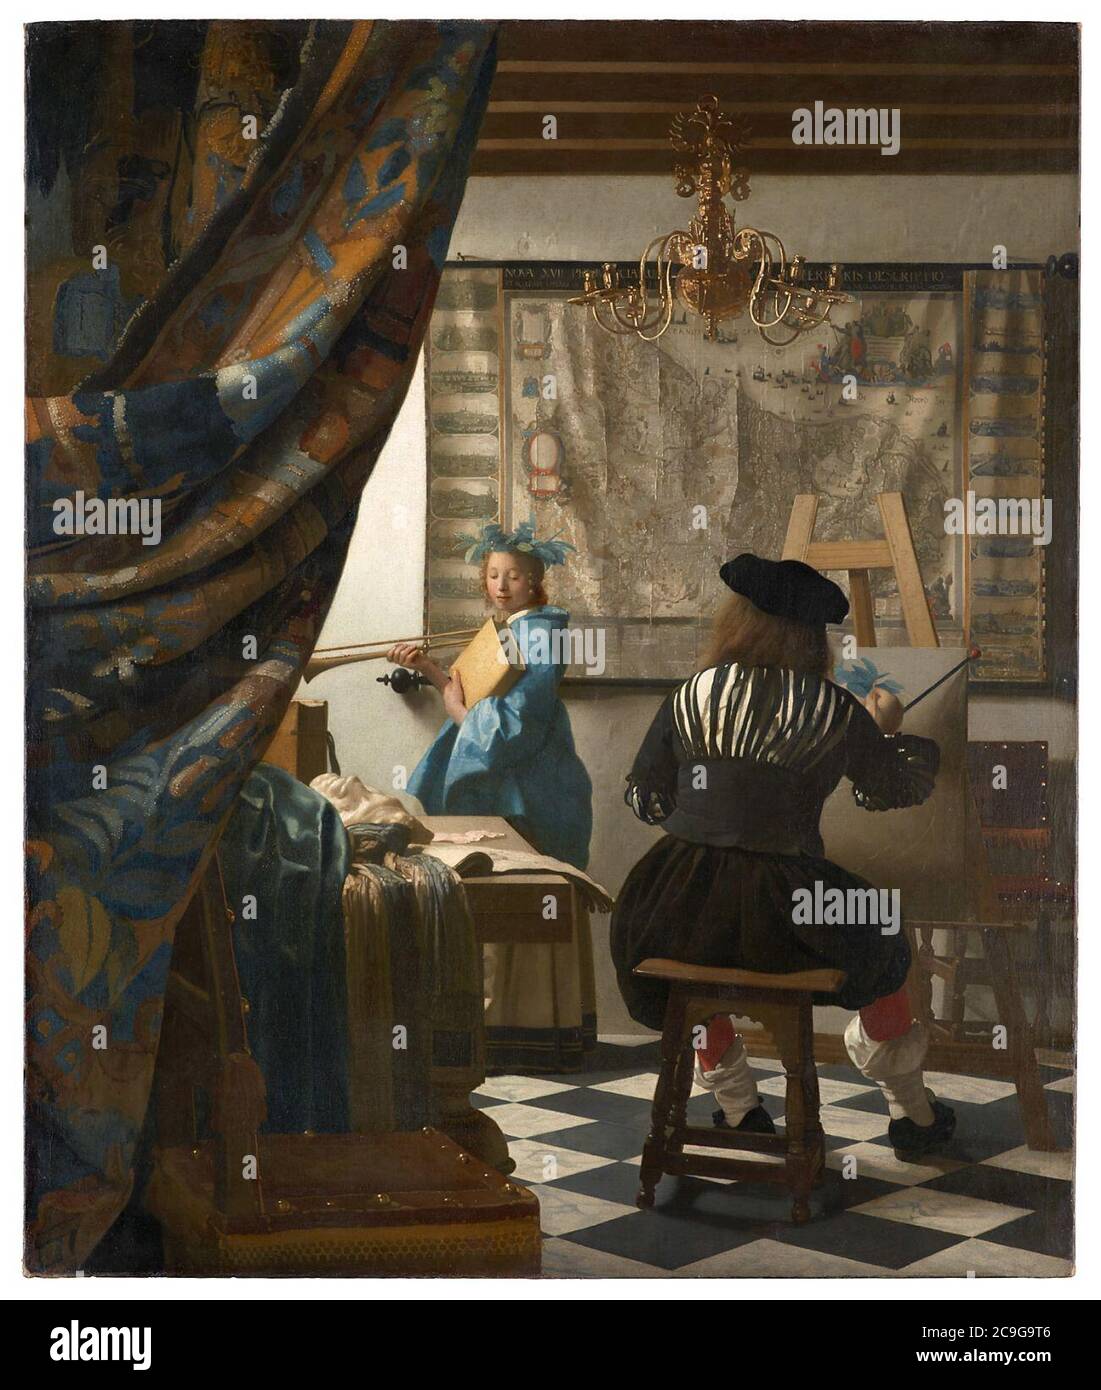 Jan Vermeer van Delft 011. Stock Photo